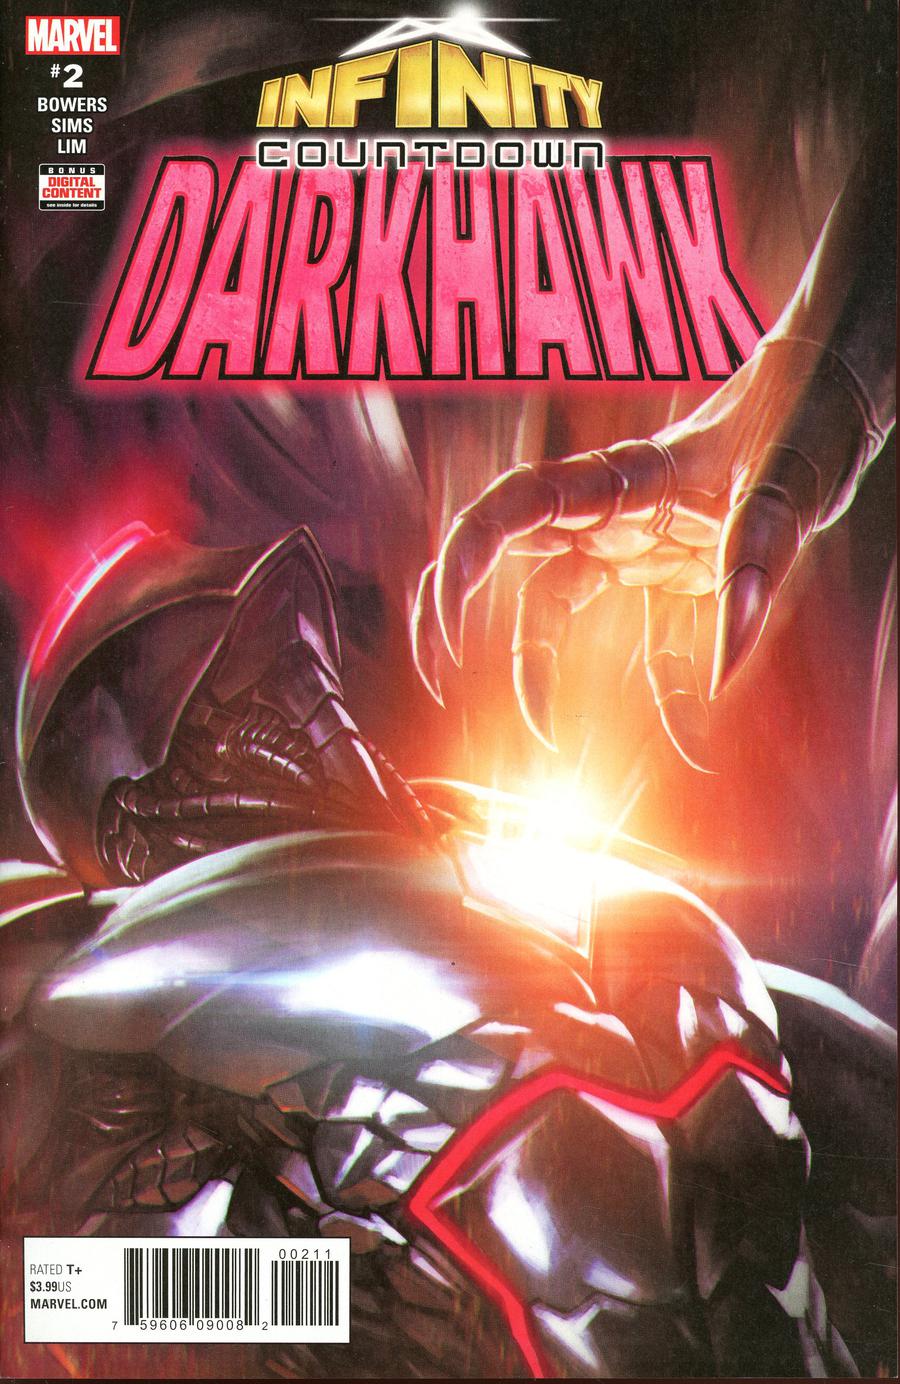 Infinity Countdown Darkhawk #2 Cover A Regular Skan Cover